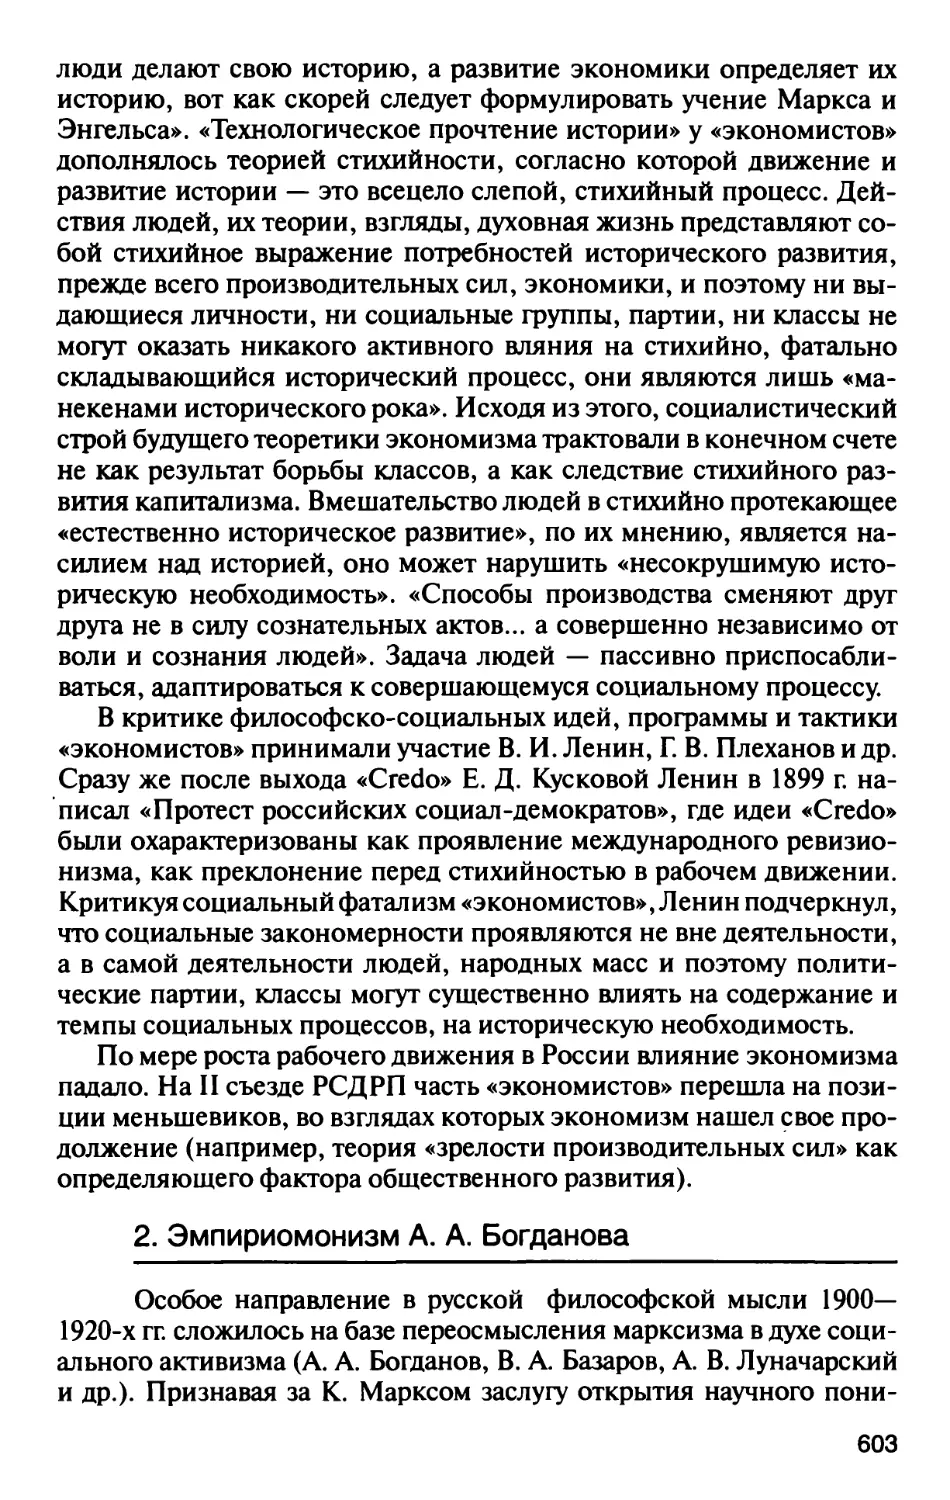 2. Эмпириомонизм А.А. Богданова